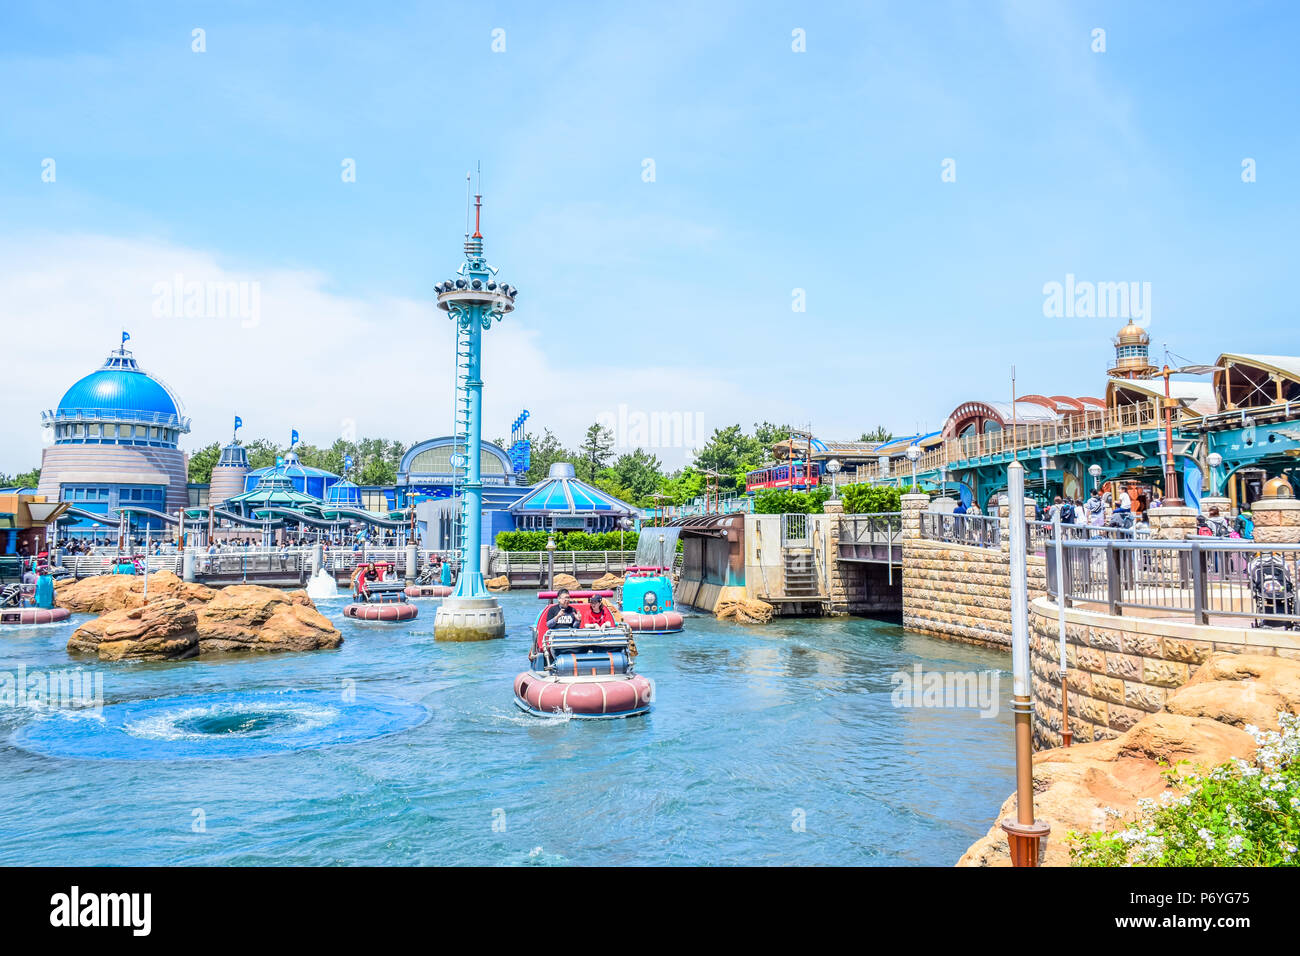 Aquatopia Attraction In Port Discovery Area In Tokyo Disneysea Located In Urayasu Chiba Japan